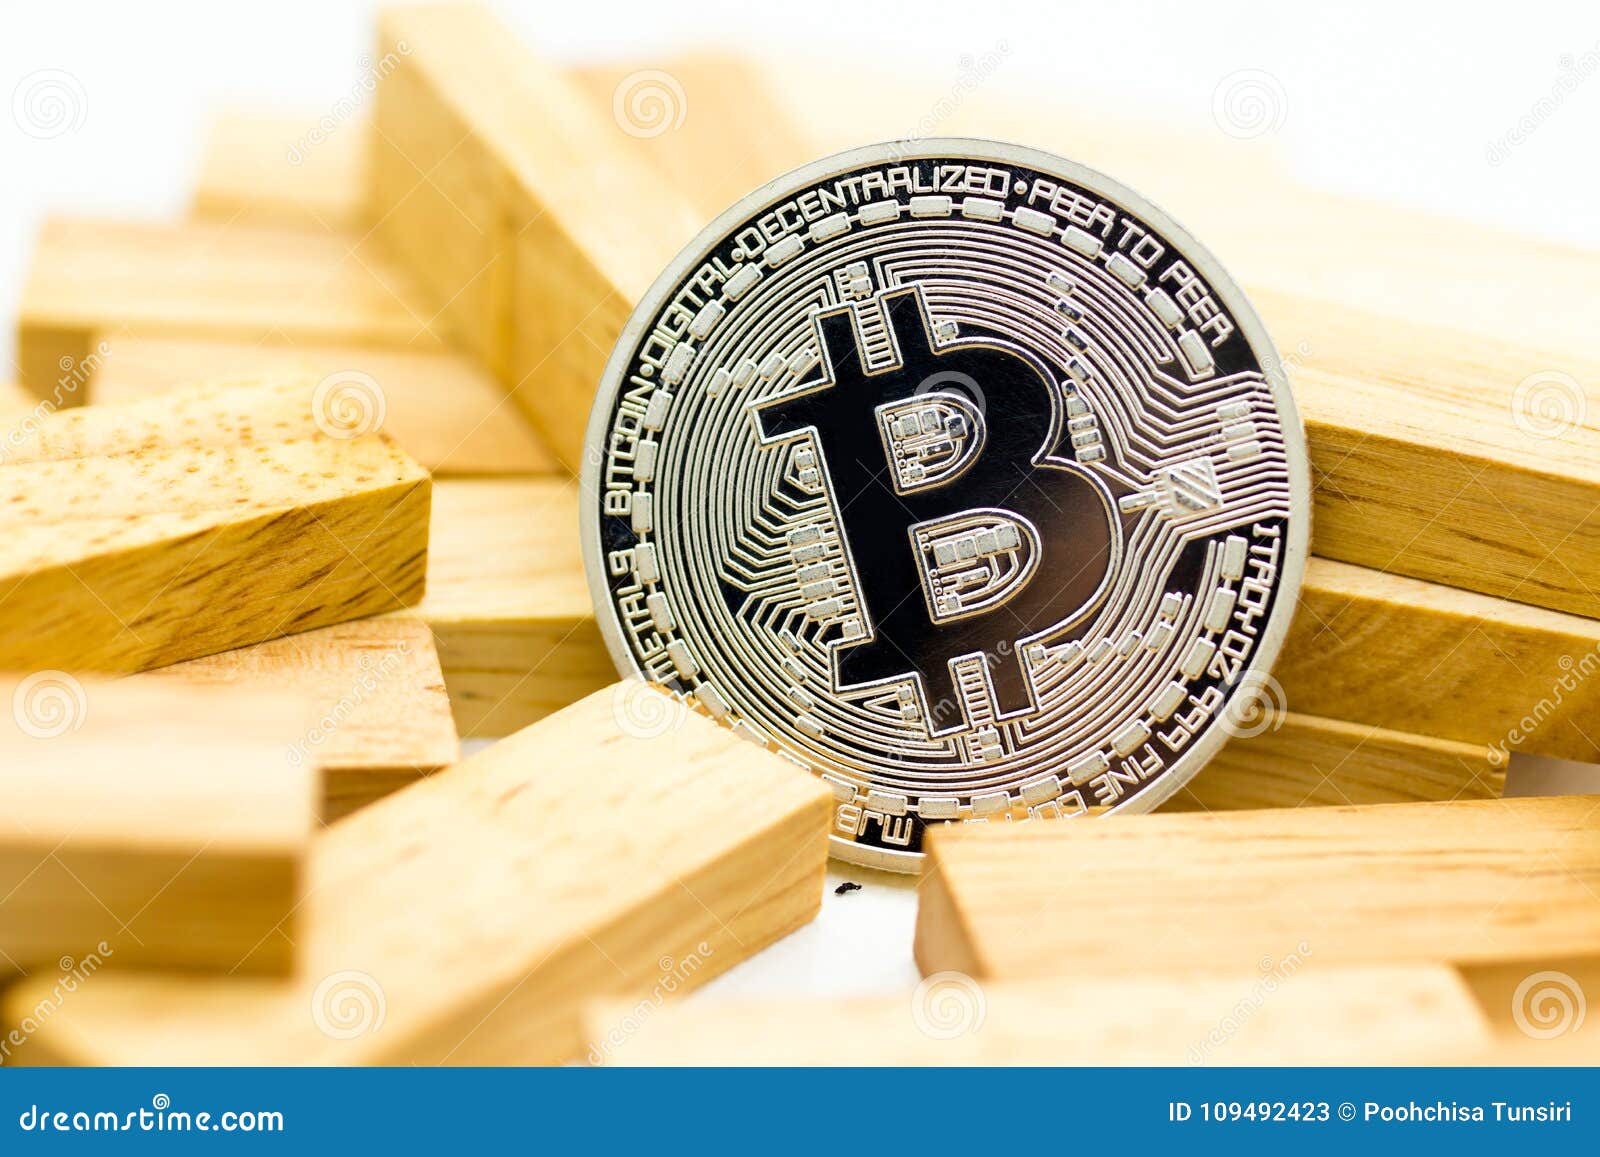 intermediarul bitcoin plus500 comisioane